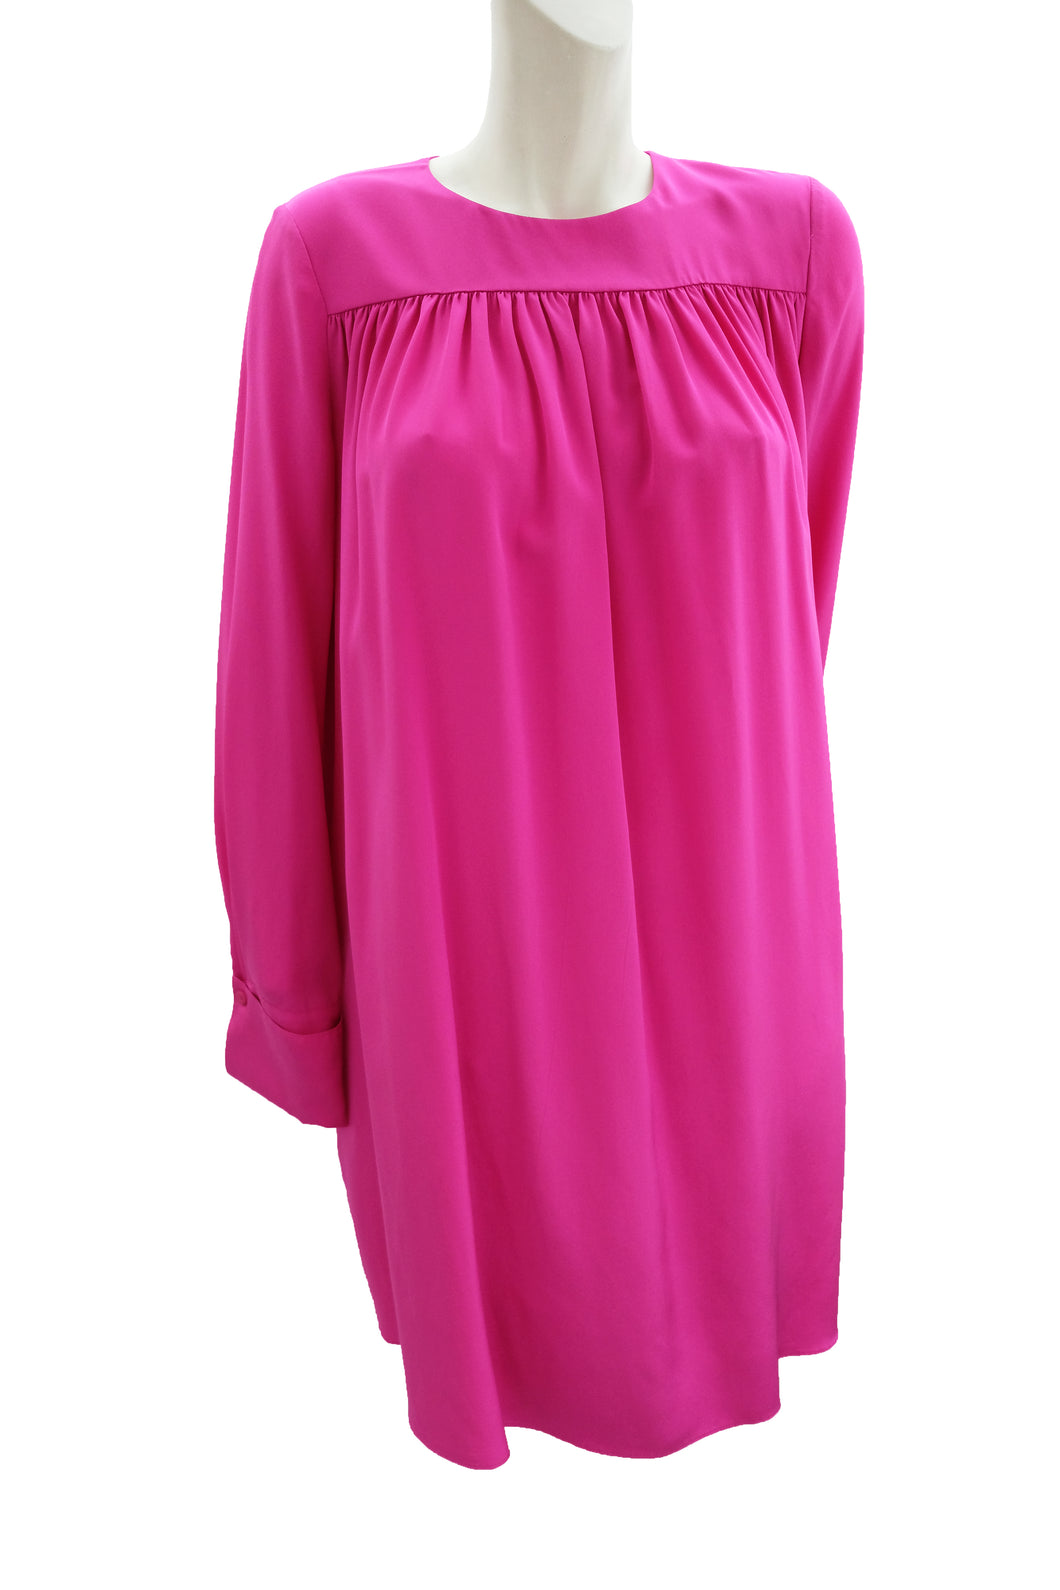 Diane von Furstenberg Pink Silk Tent Dress, UK8-10